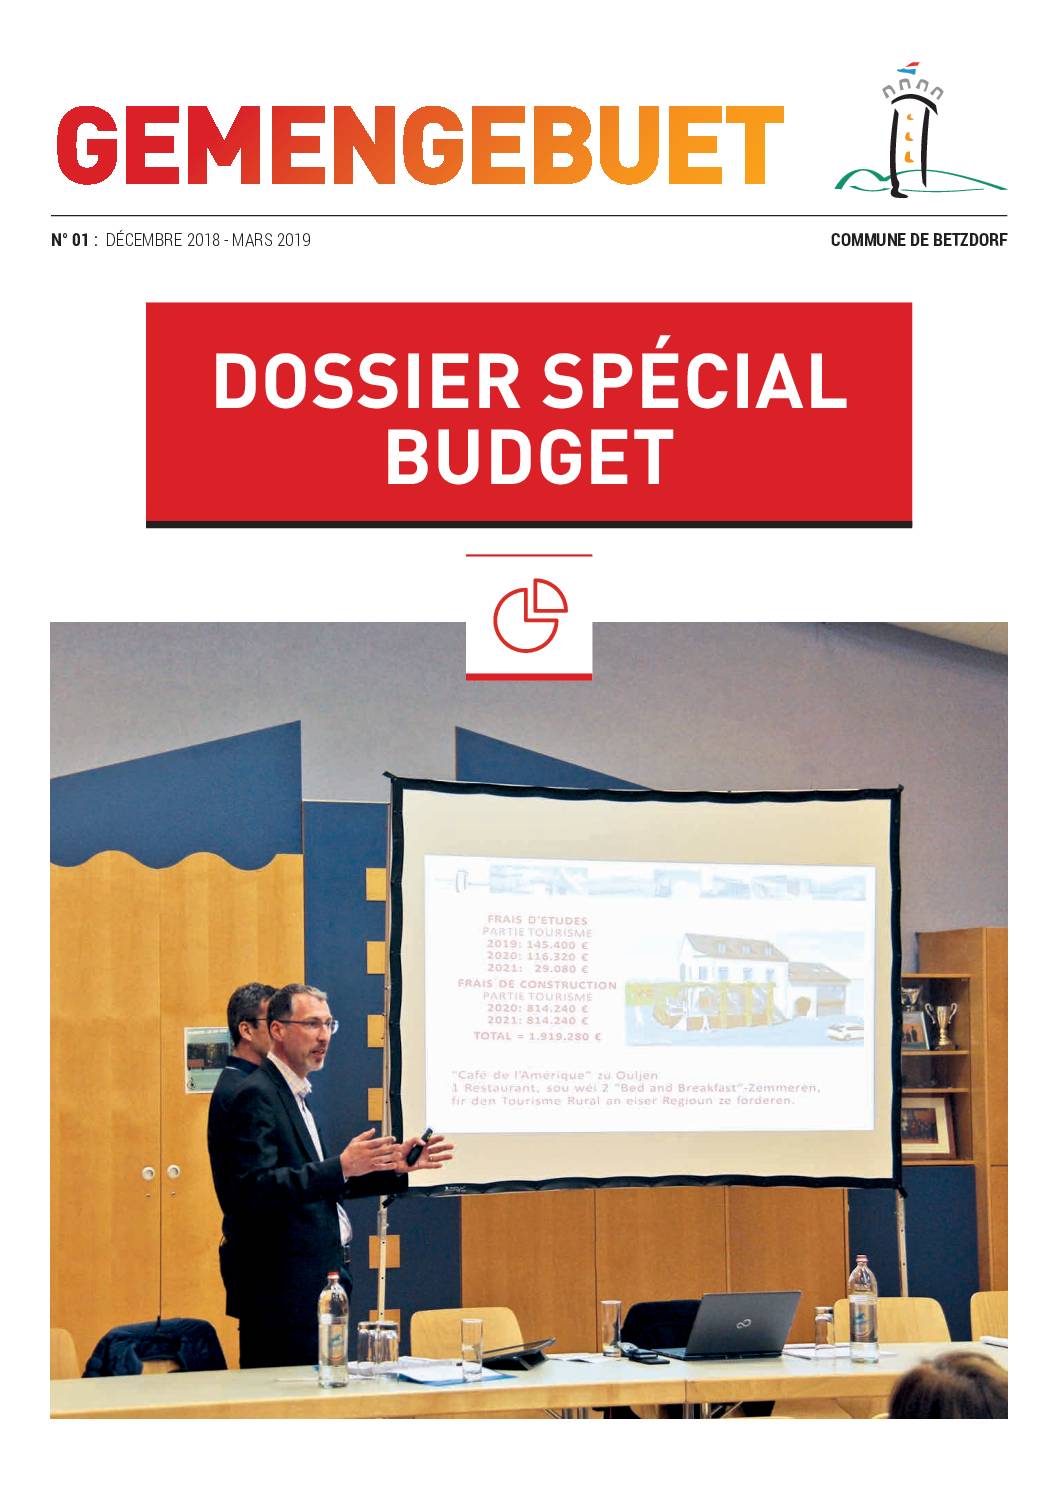 Gemengebuet - Dossier Spécial Budget 2019